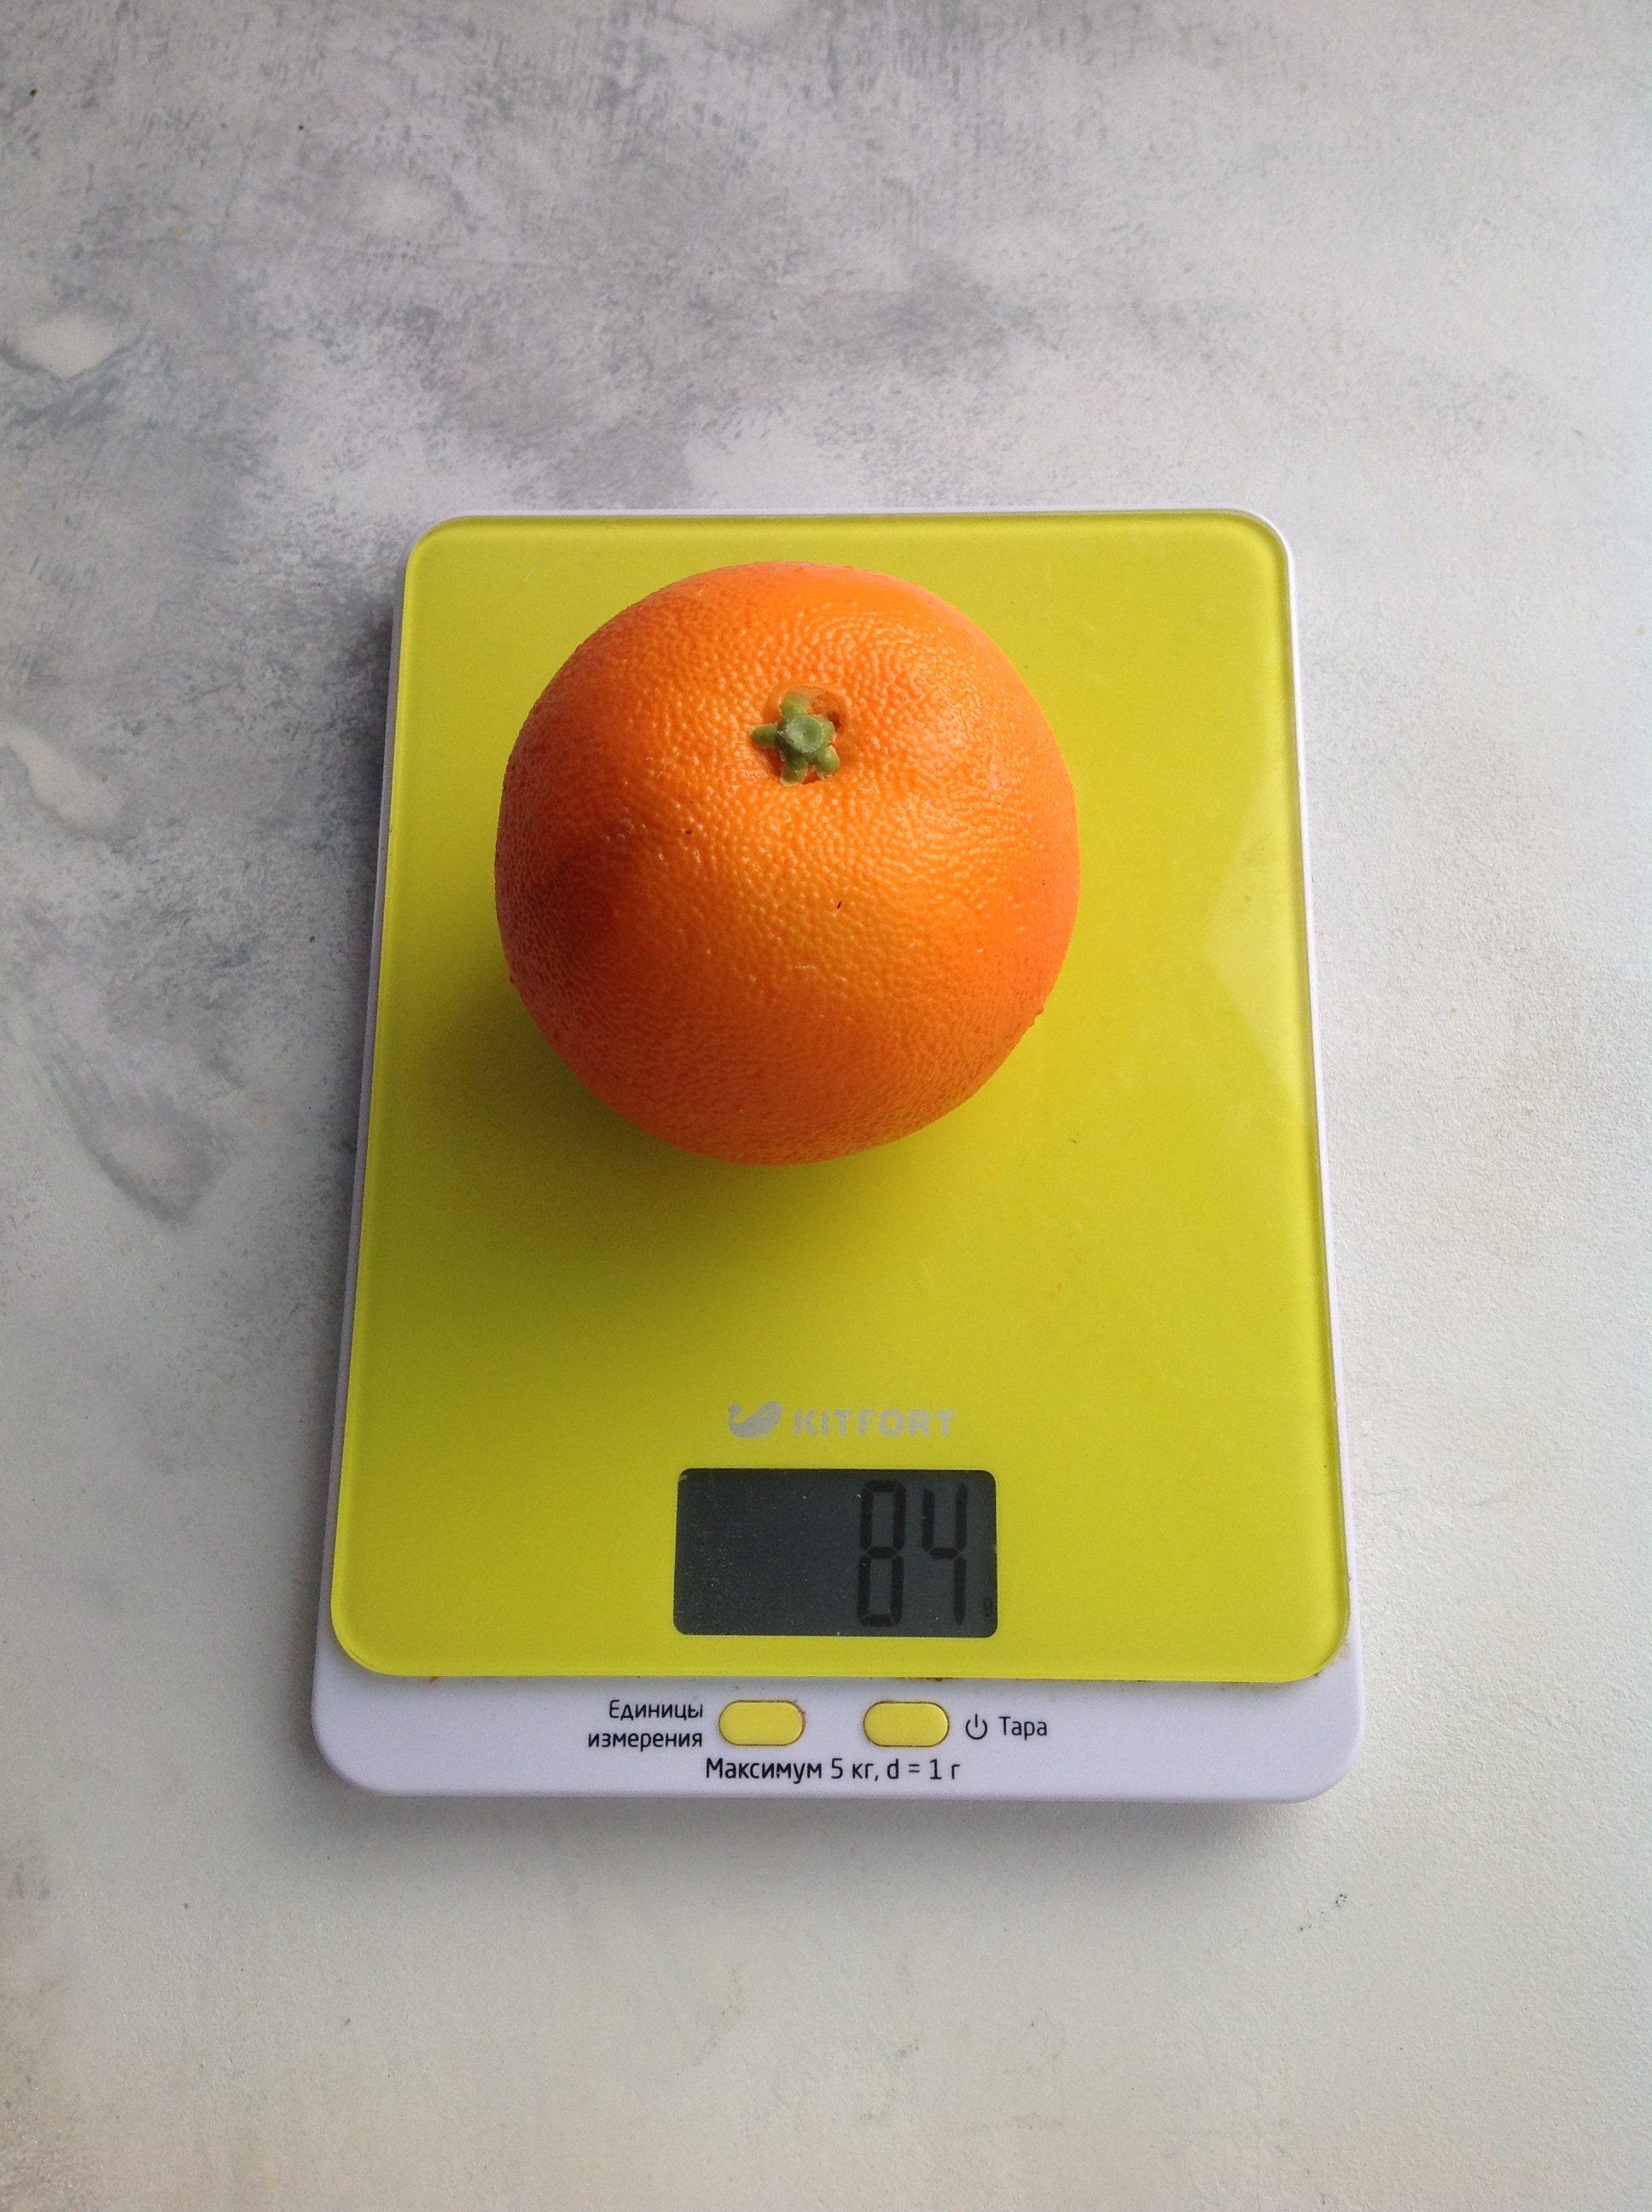 вес апельсина воскового